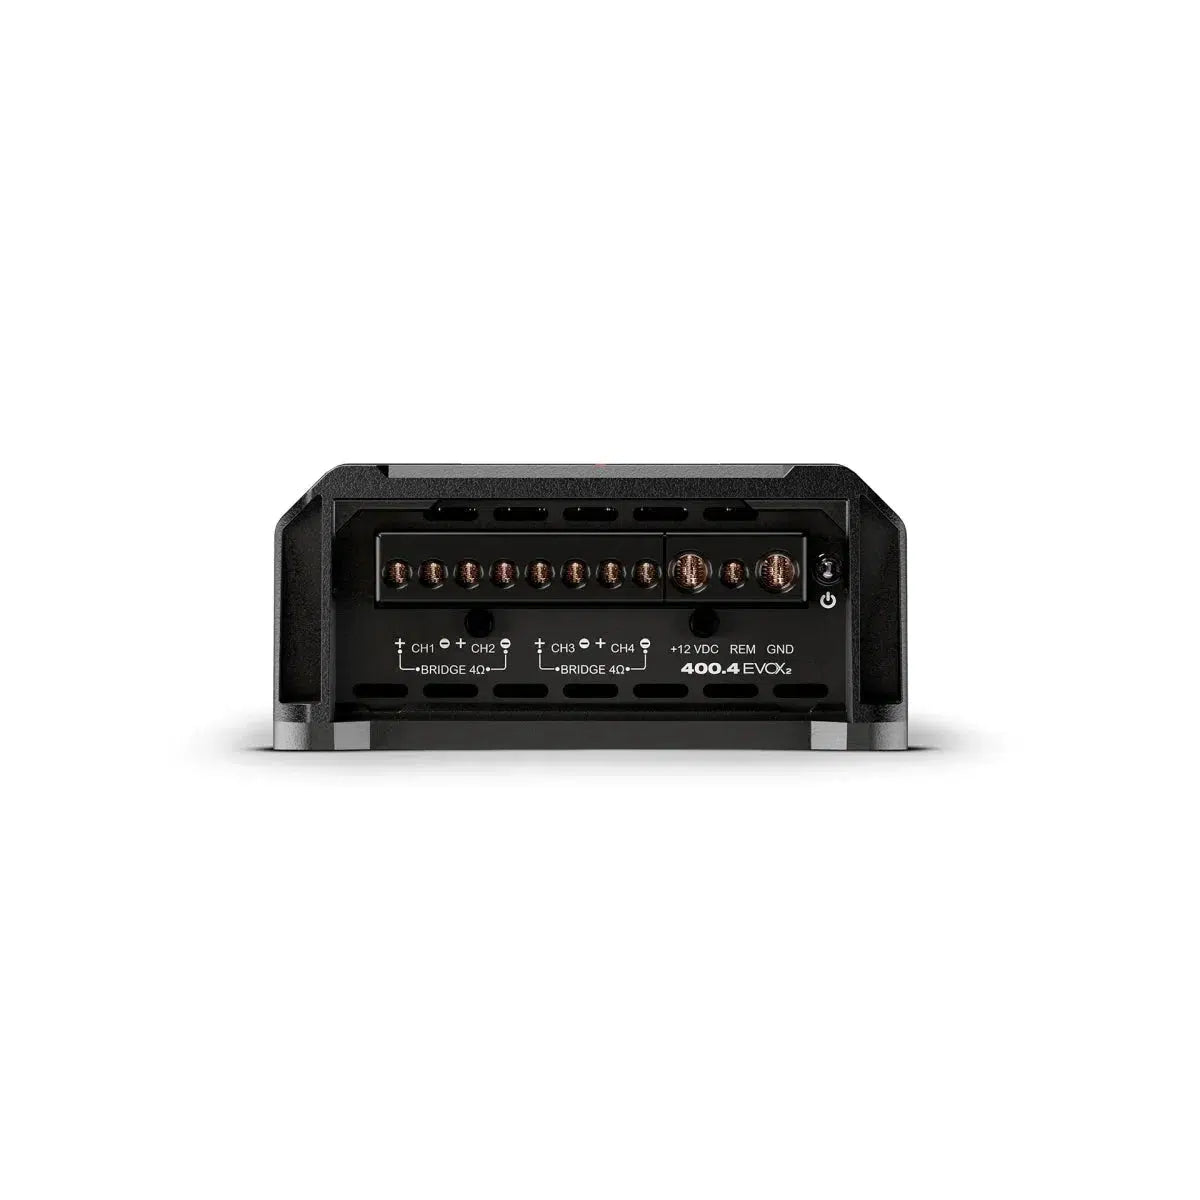 Amplificador de 4 canales Soundigital-400.4 EVOX2-Masori.de